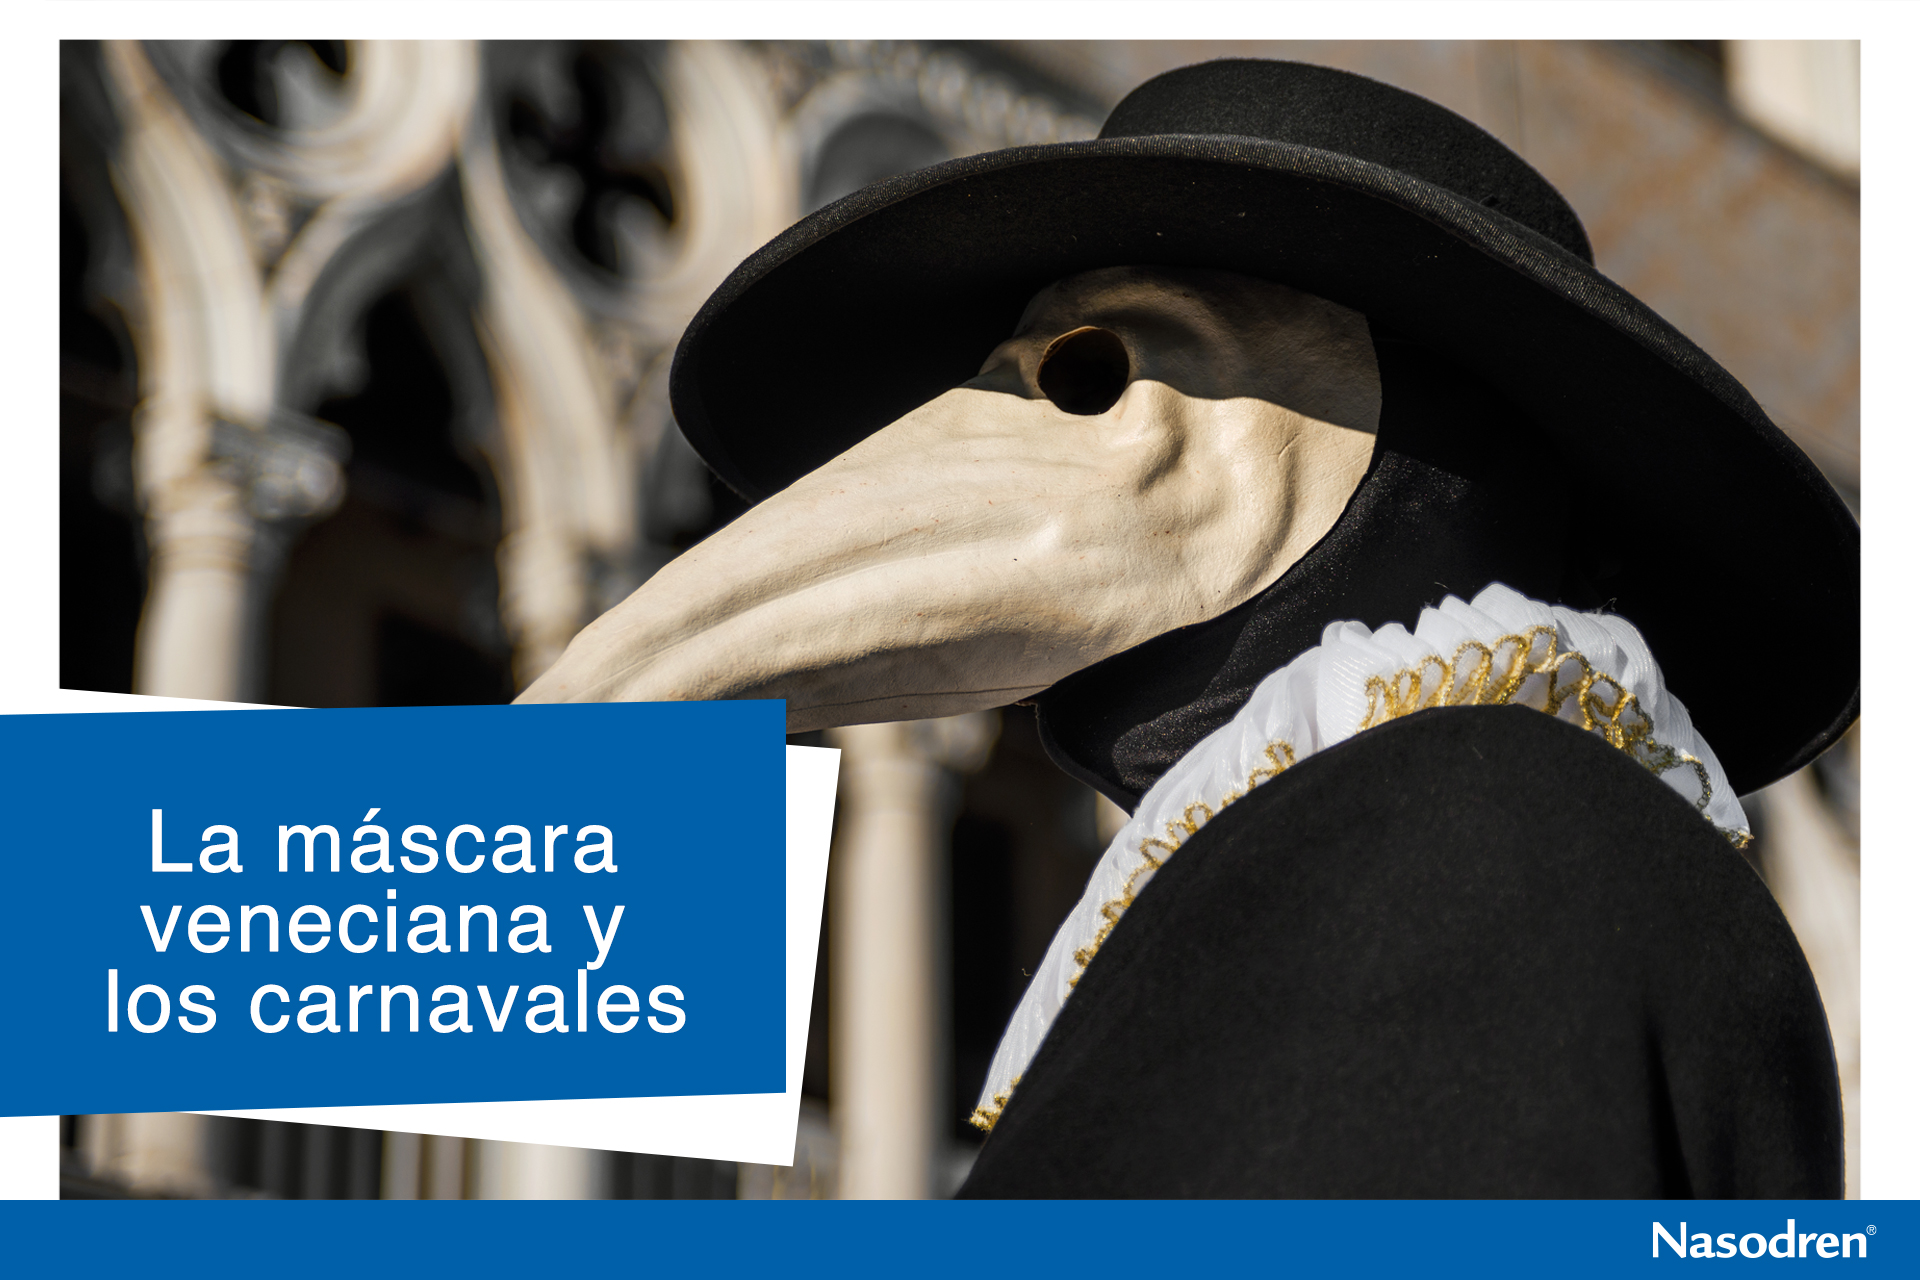 La máscara veneciana y los carnavales